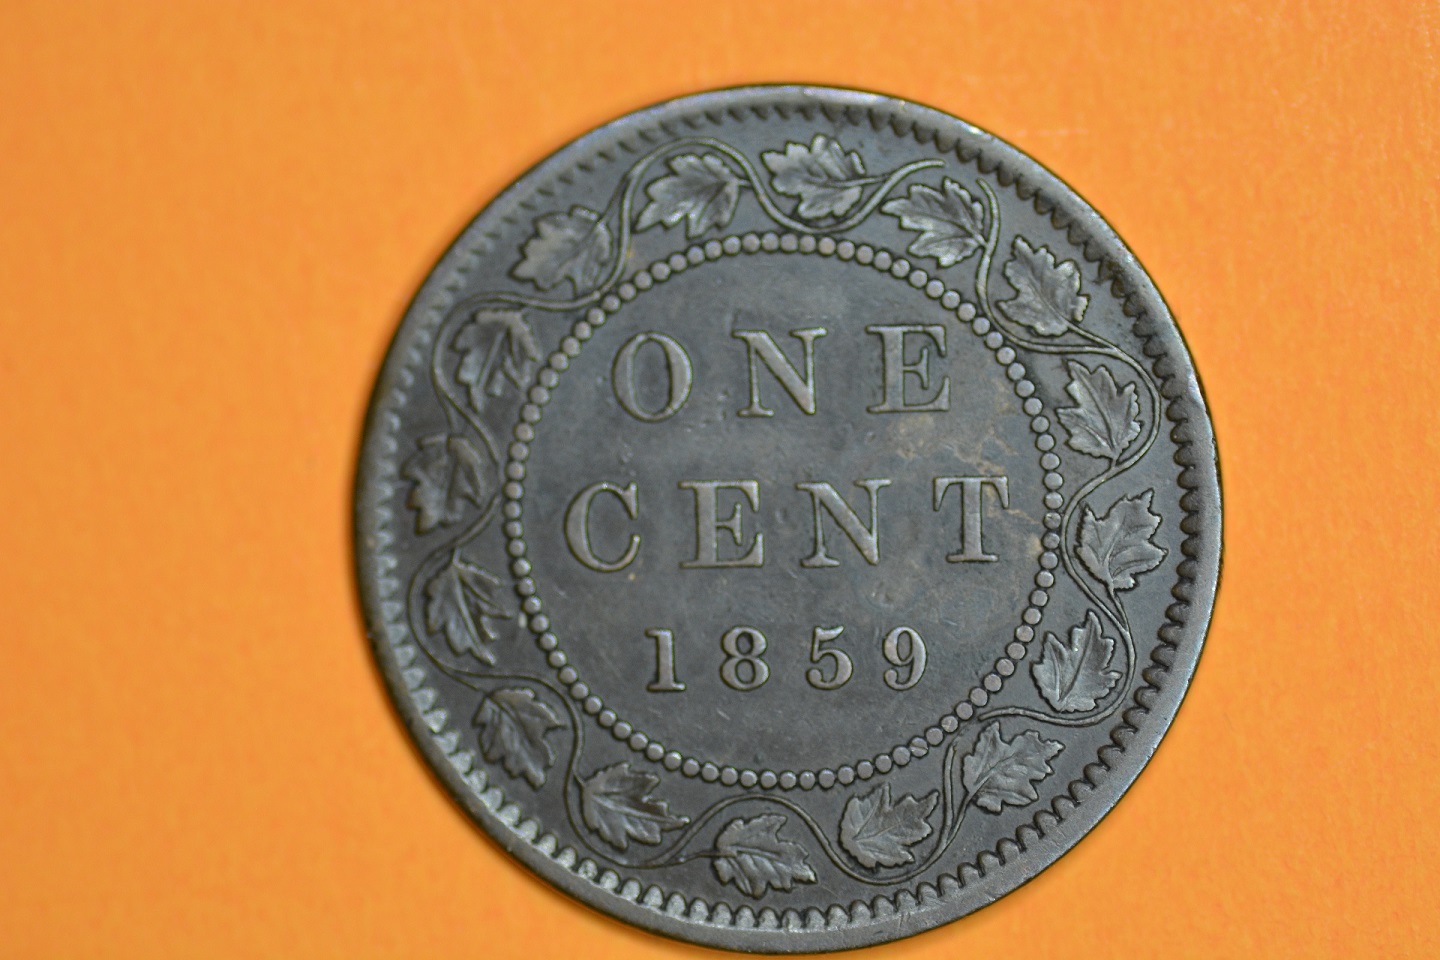 cents 1899 D9 30-04-18 005.JPG